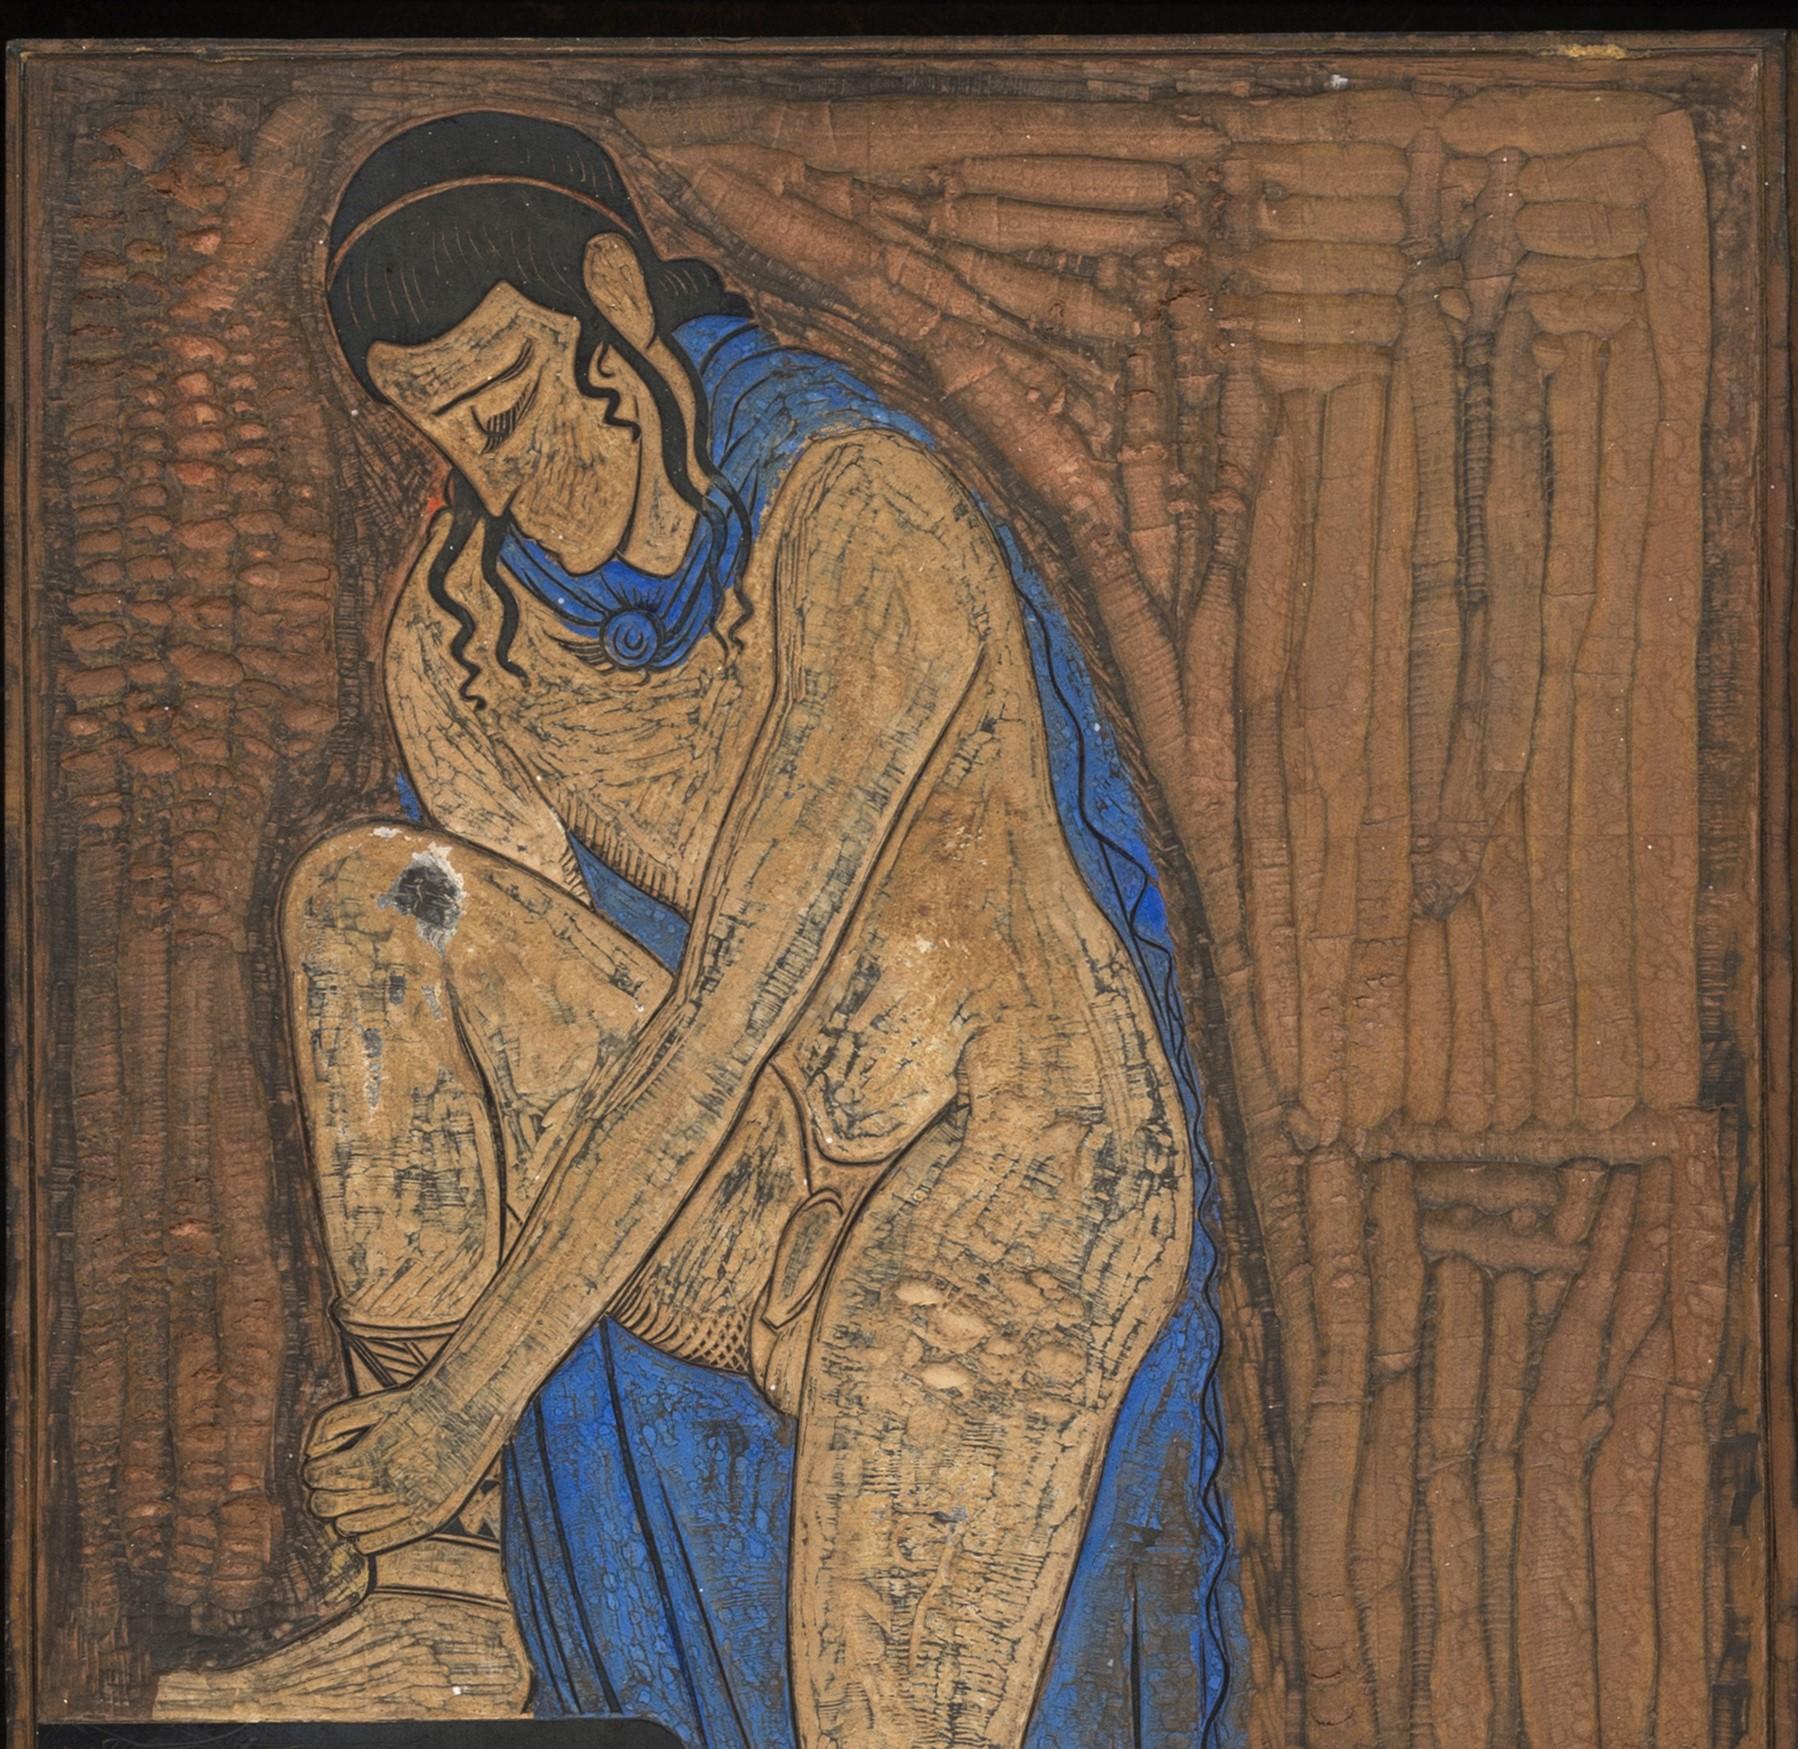  Illustration für Homers Odyssee (Art déco), Painting, von François-Louis Schmied